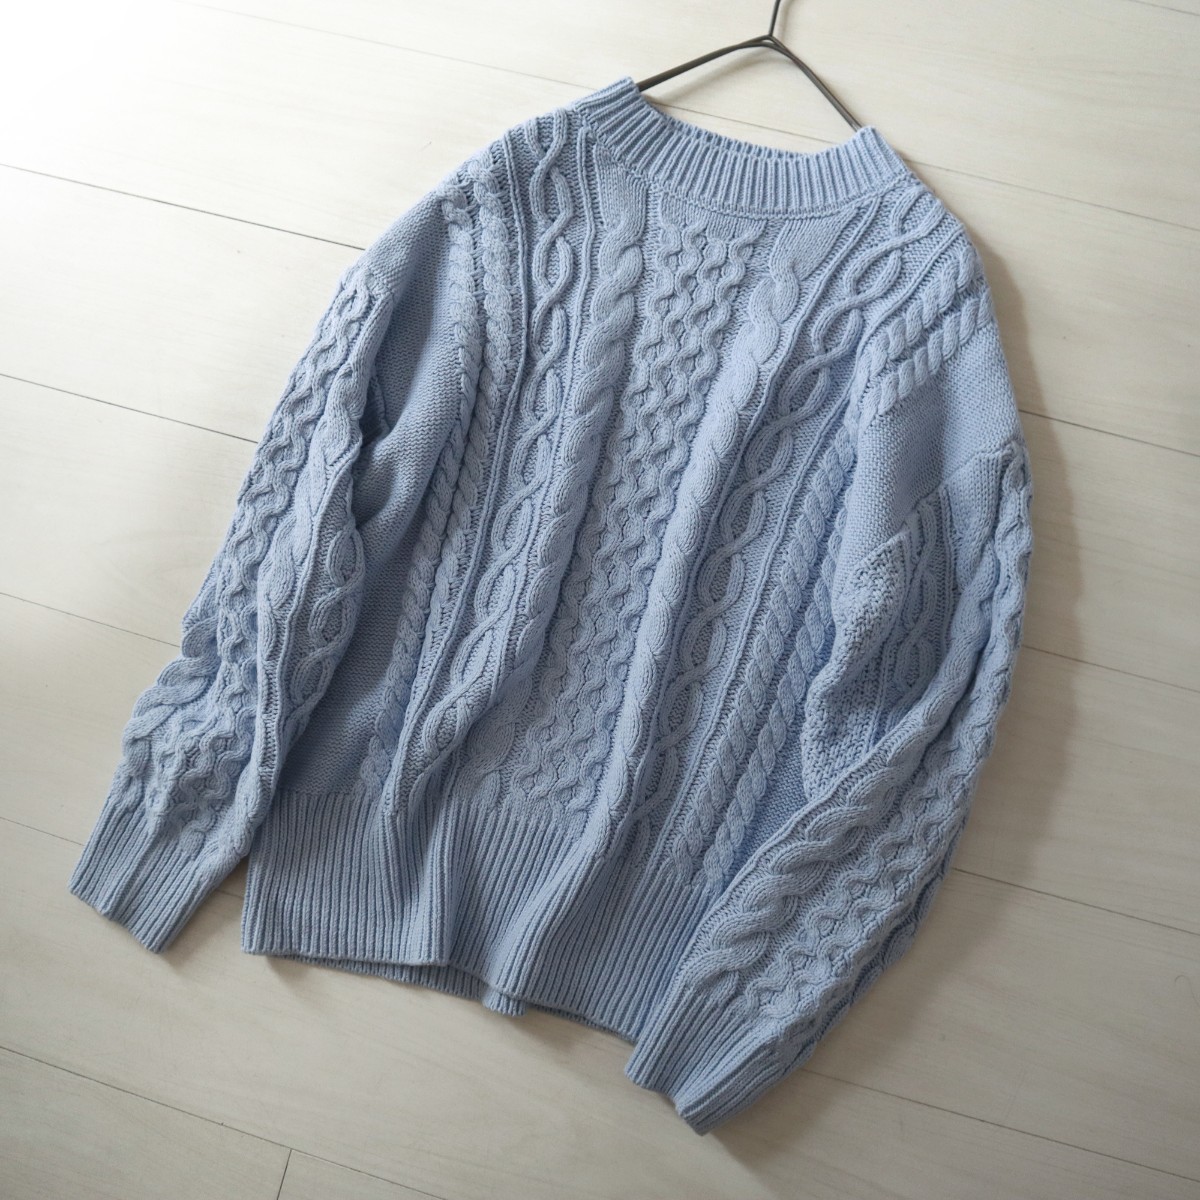 春色サックスブルーおしゃれテチチのクルーネックきれい色ケーブル編みニットプルオーバー長袖セーター水色こなれベーシック暖かい華やか_画像10